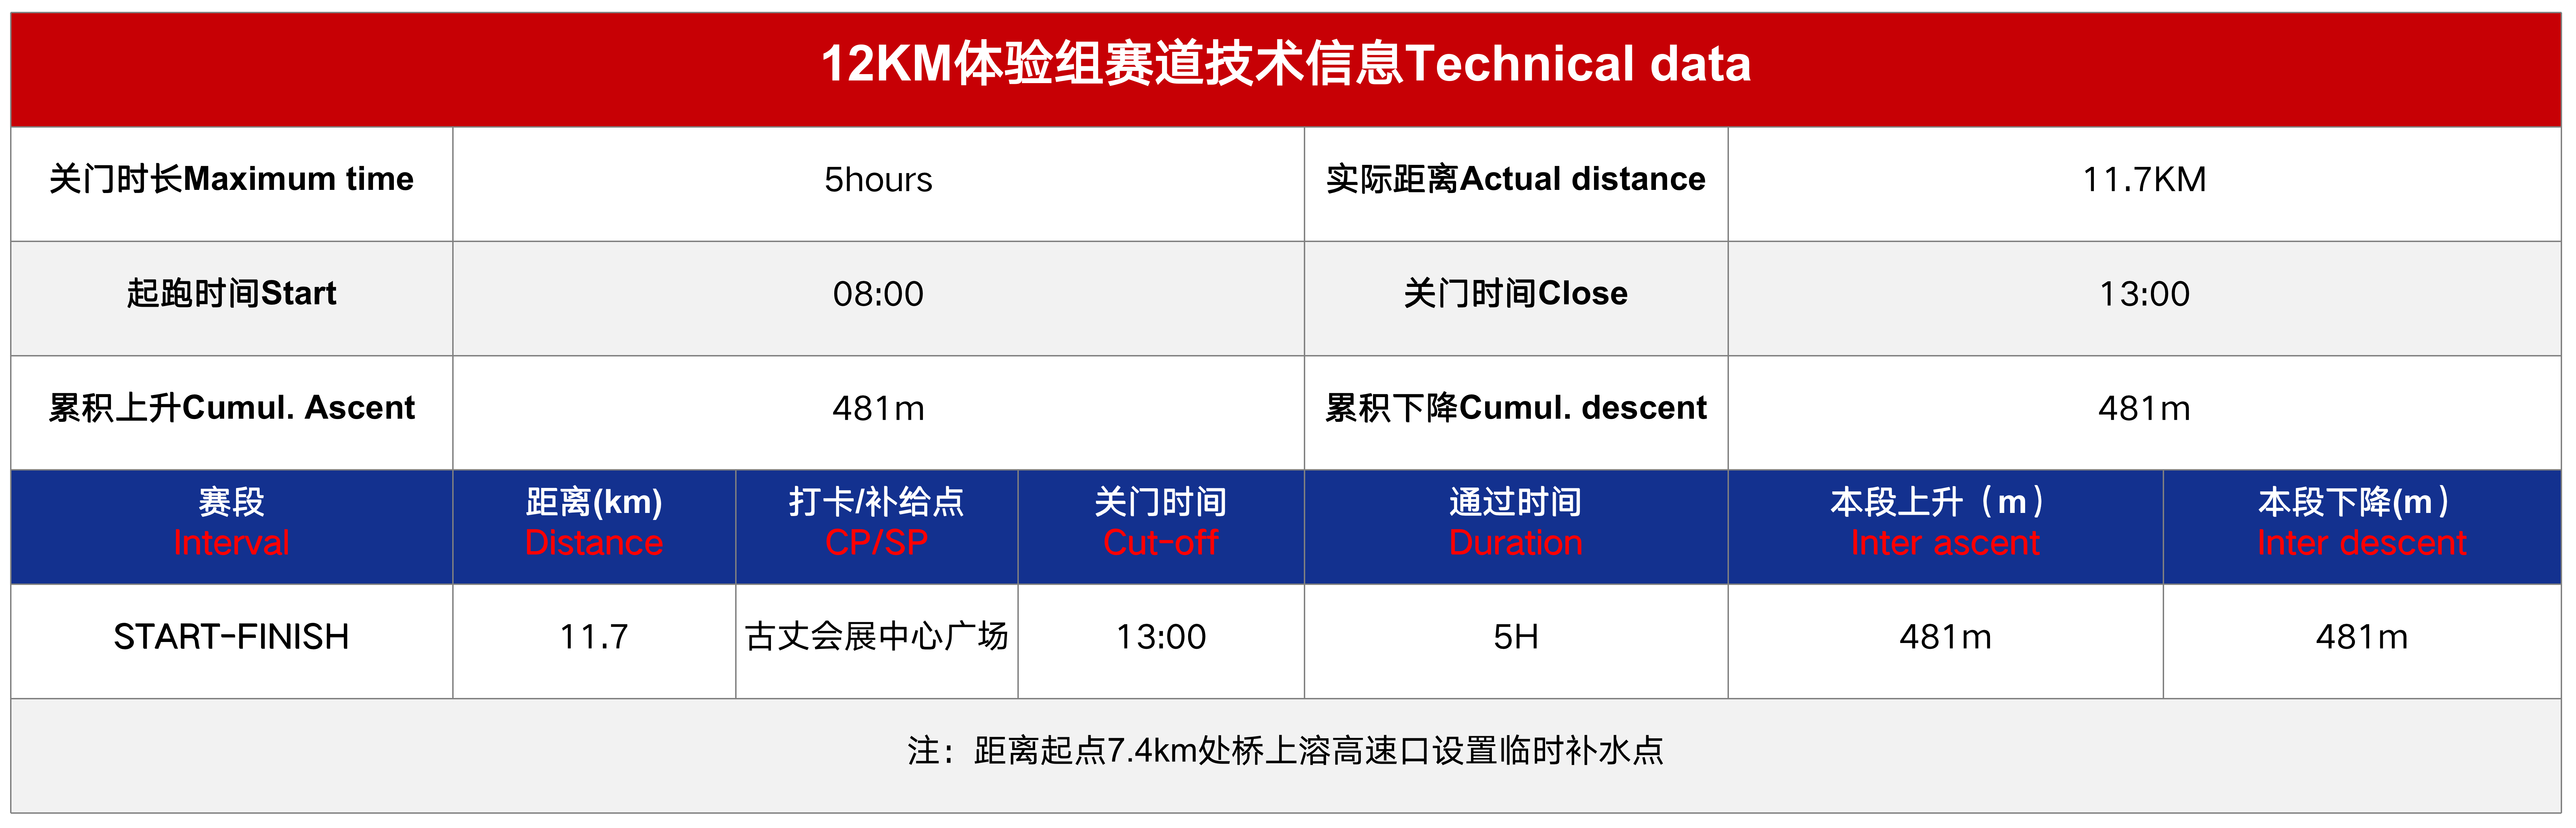 赛道技术信息12km.png